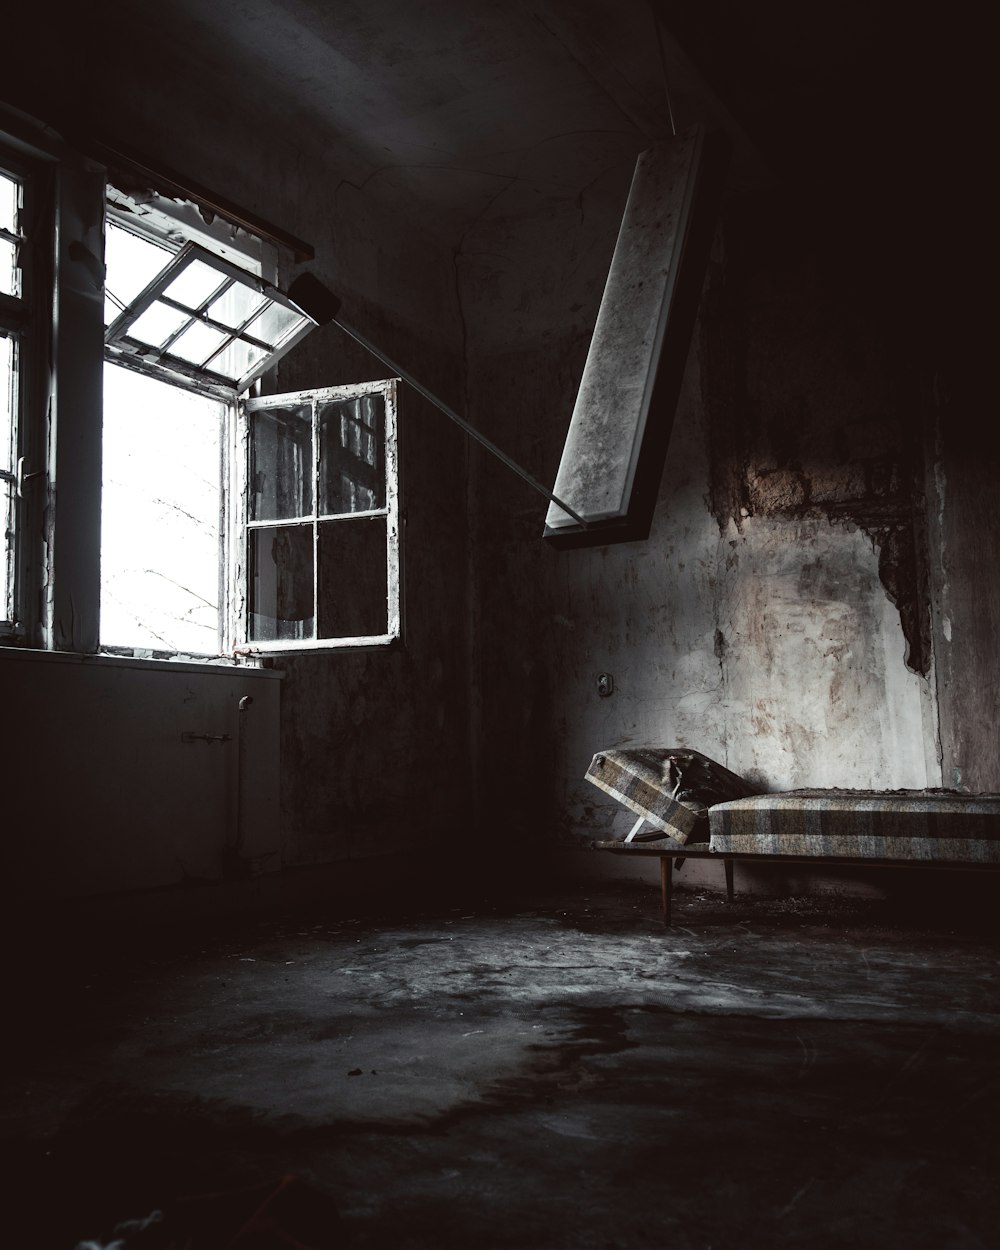 letto all'interno di un edificio abbandonato vicino alla finestra aperta